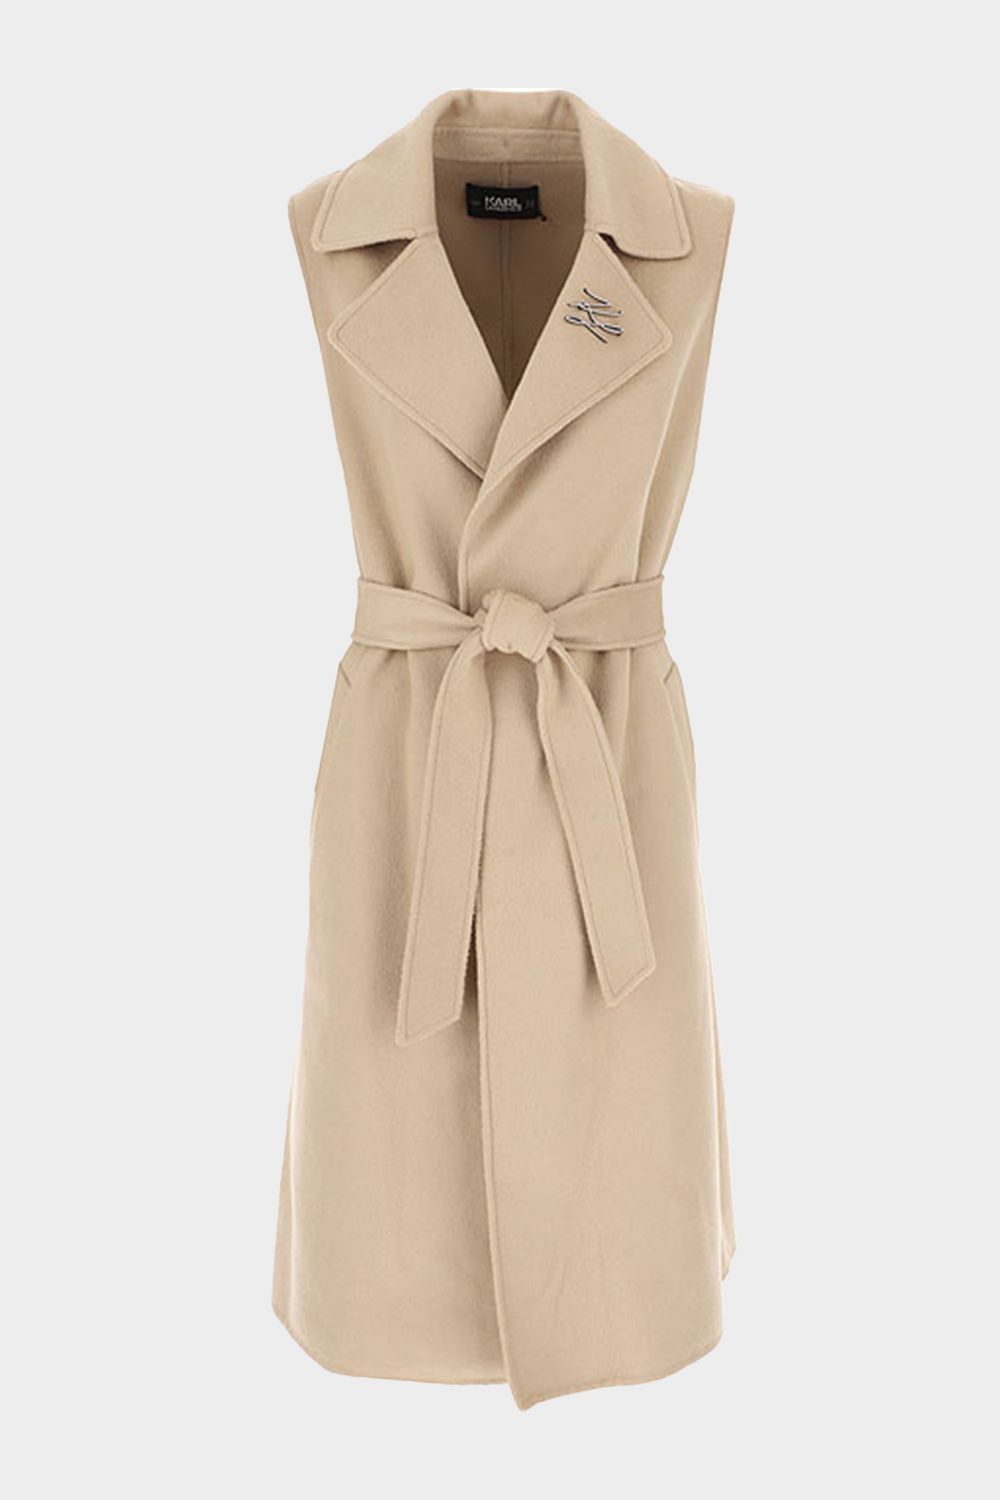 מעיל טרנץ' ארוך לנשים בצבע בז KARL LAGERFELD Vendome online | ונדום .